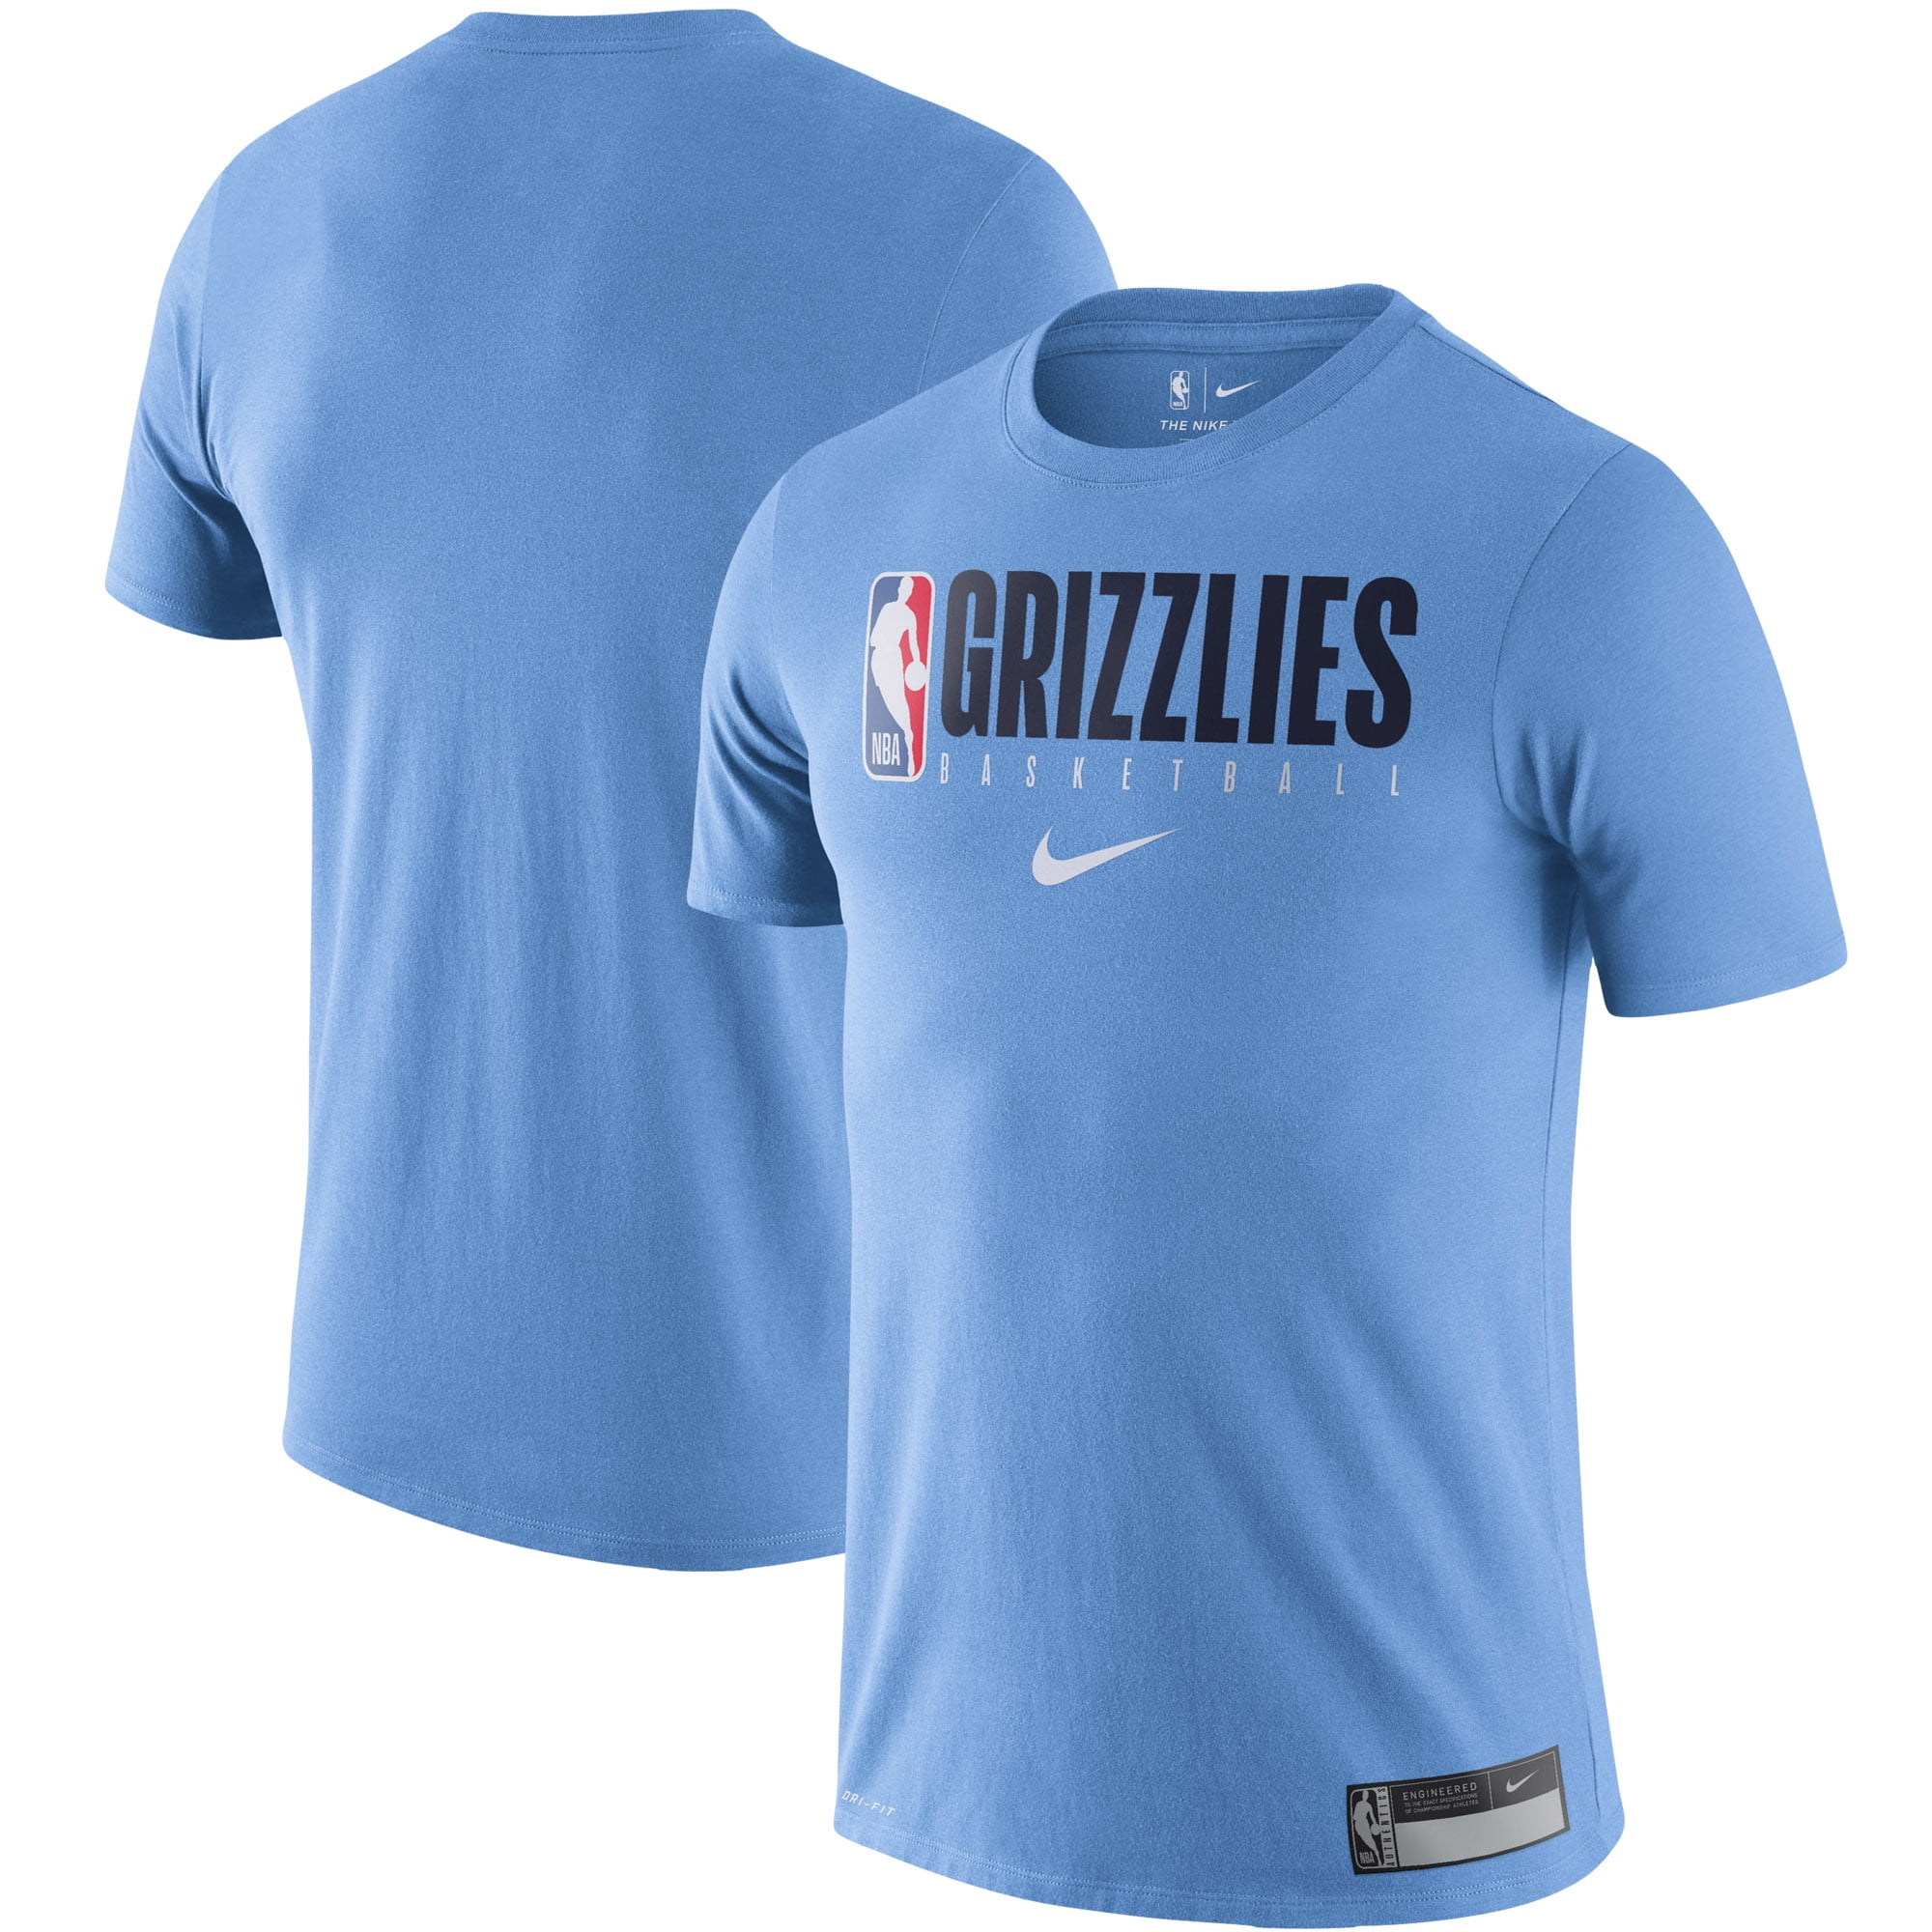 memphis grizzlies light blue jersey